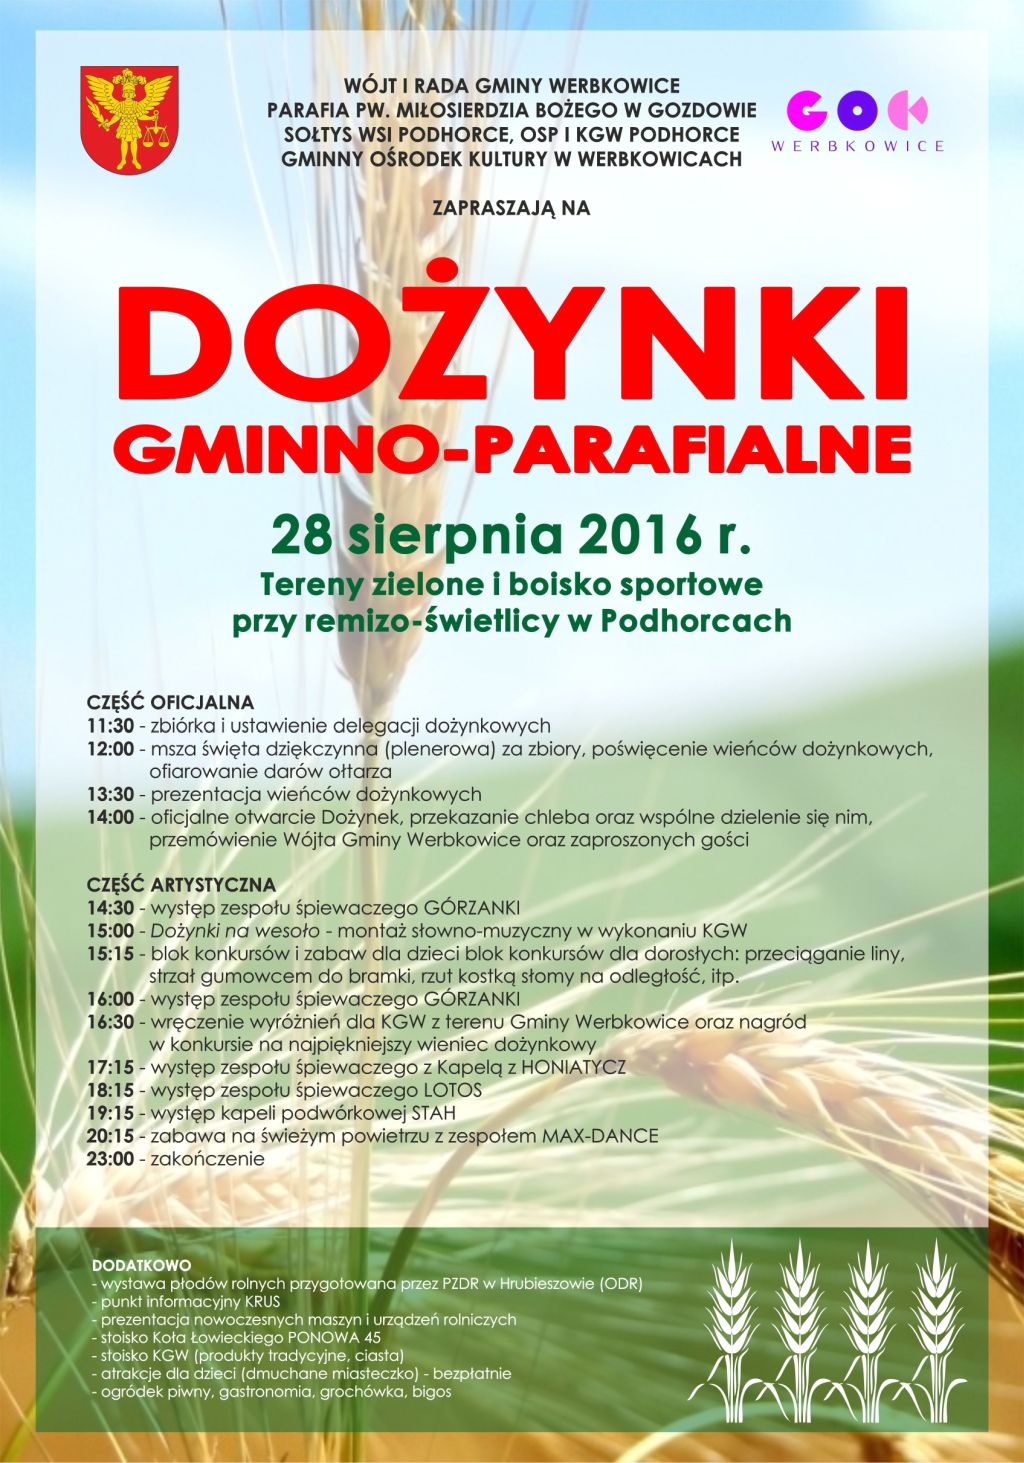 Zaproszenie na Dożynki gminno-parafialne 2016 w Podhorcach